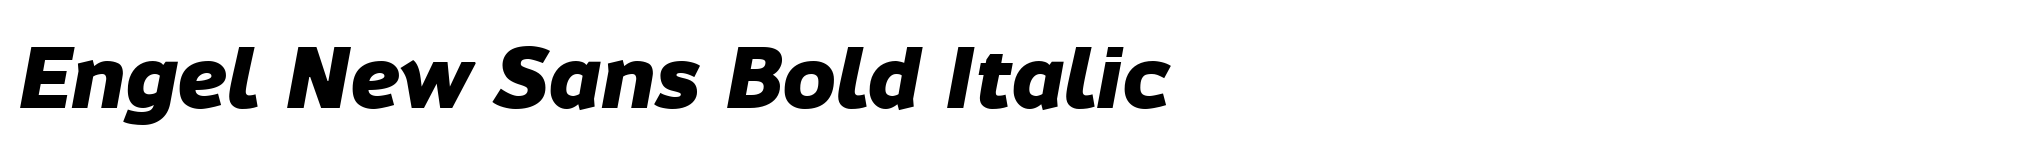 Engel New Sans Bold Italic image